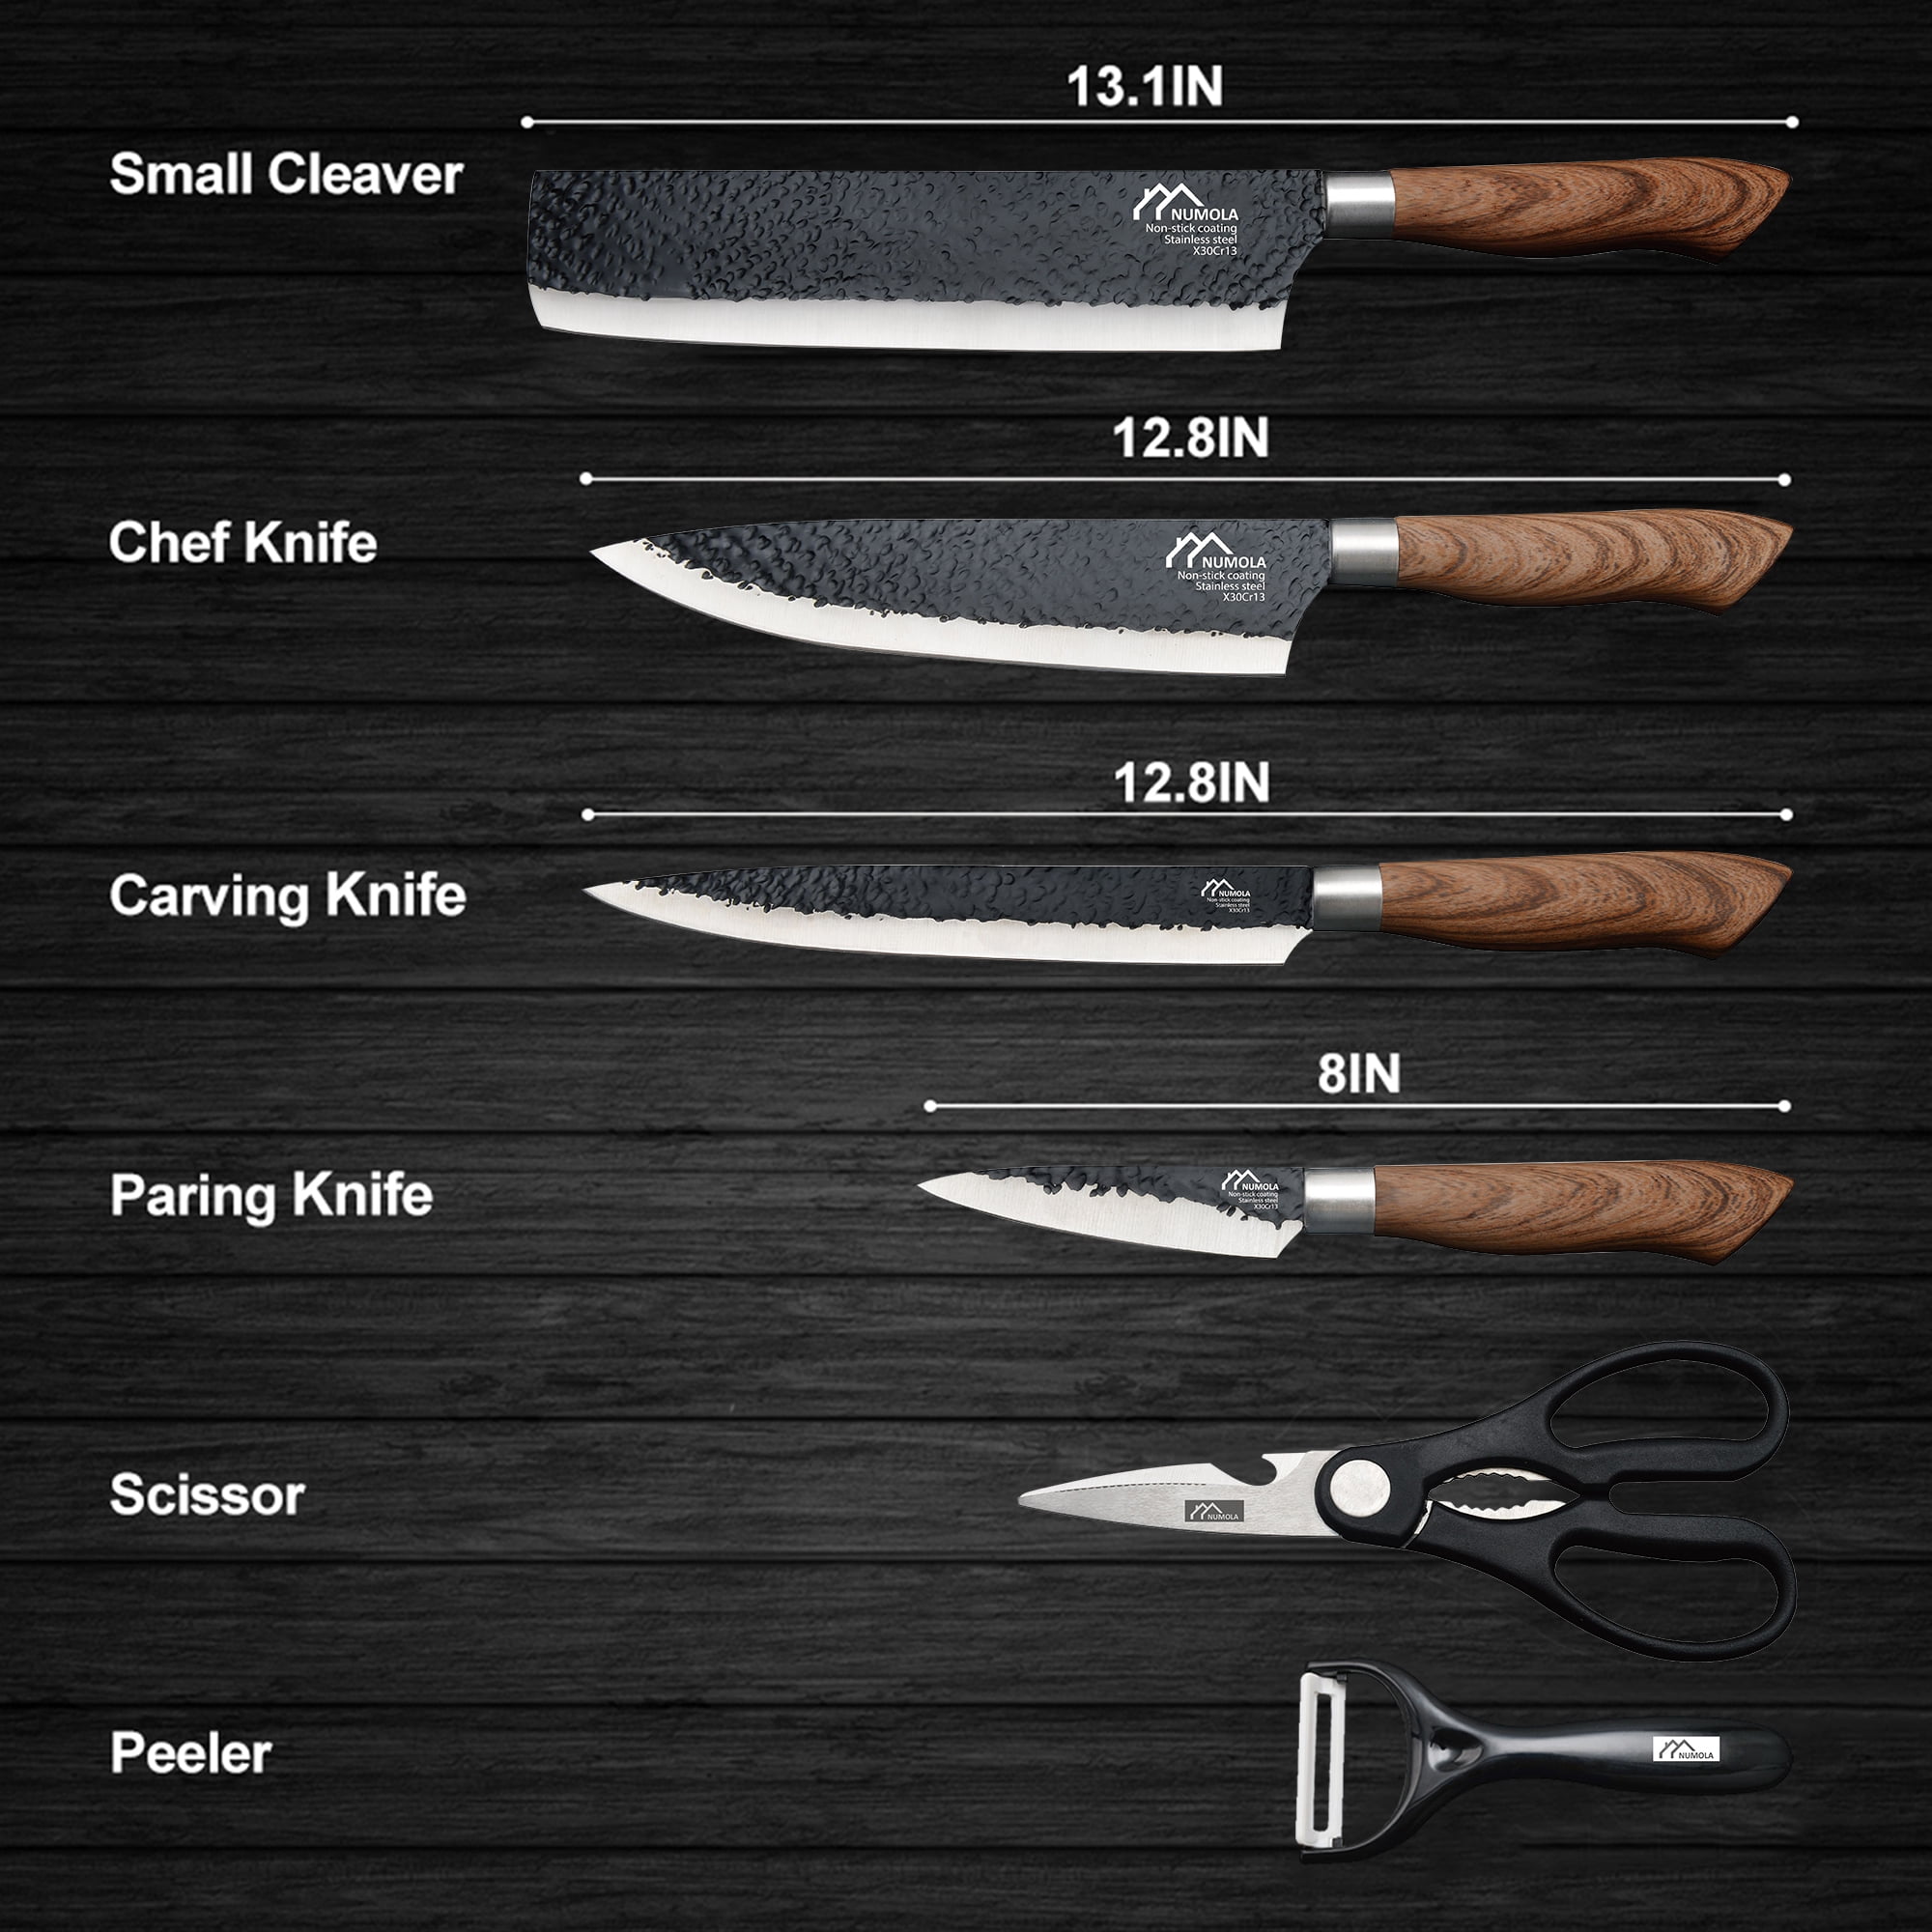 Kitchen Knife Set, Retrosohoo 6-Pieces Black Sharp Knife Set For